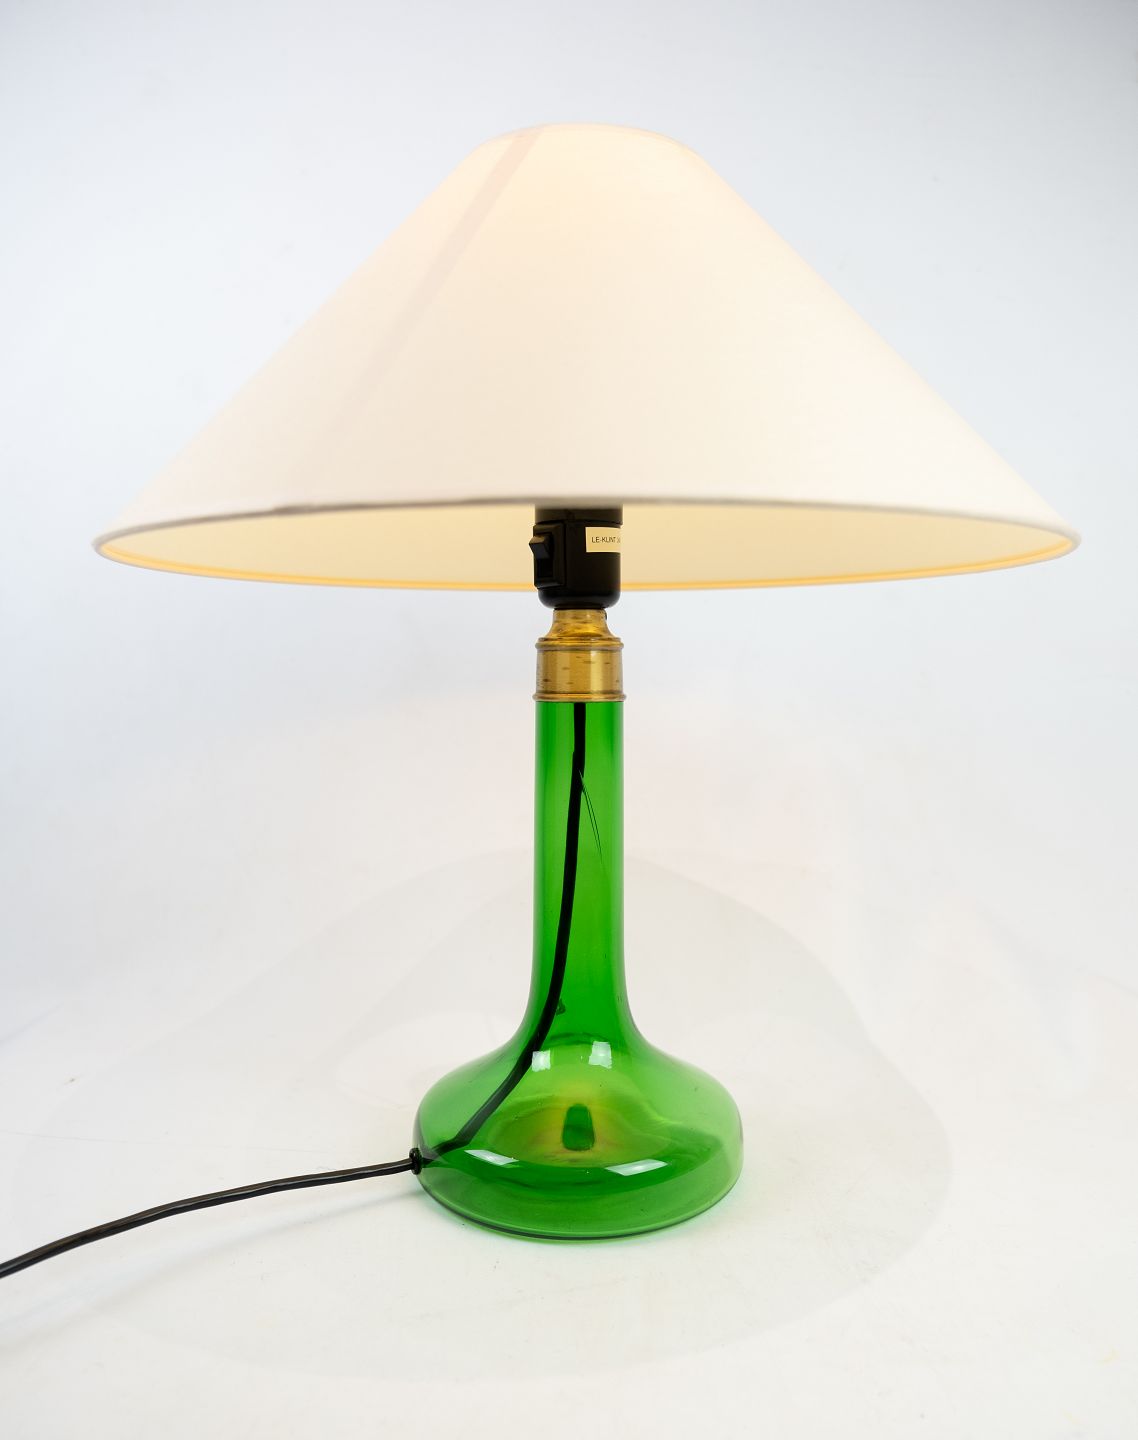 Retningslinier fire Utroskab KAD ringen - Bordlampe i grønt glas af Holmegaard fra 1960erne. * 5000m2  udstilling. - Bordlampe i grønt glas af Holmegaard fra 1960erne. * 5000m2  udstilling.